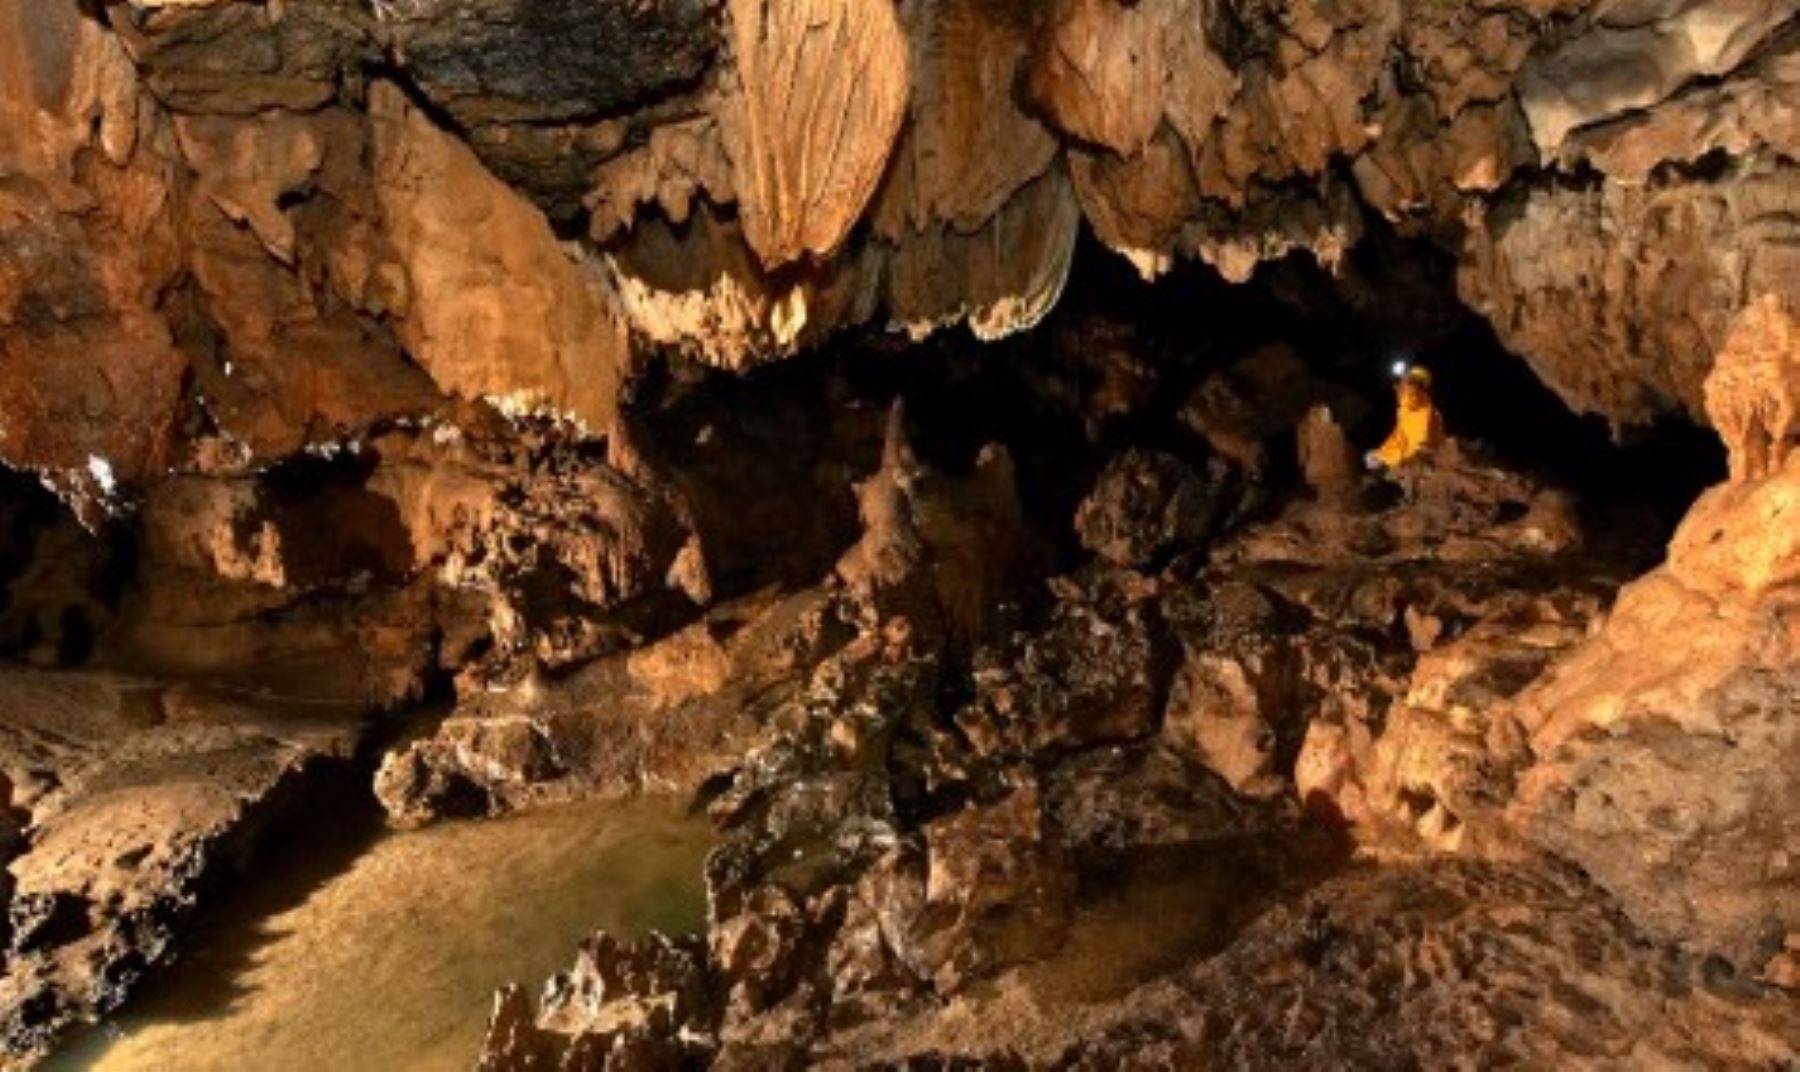 Cueva de Palestina, ubicado en la ciudad de Rioja, región San Martín. Foto: Dirección Regional de Turismo de San Martín.